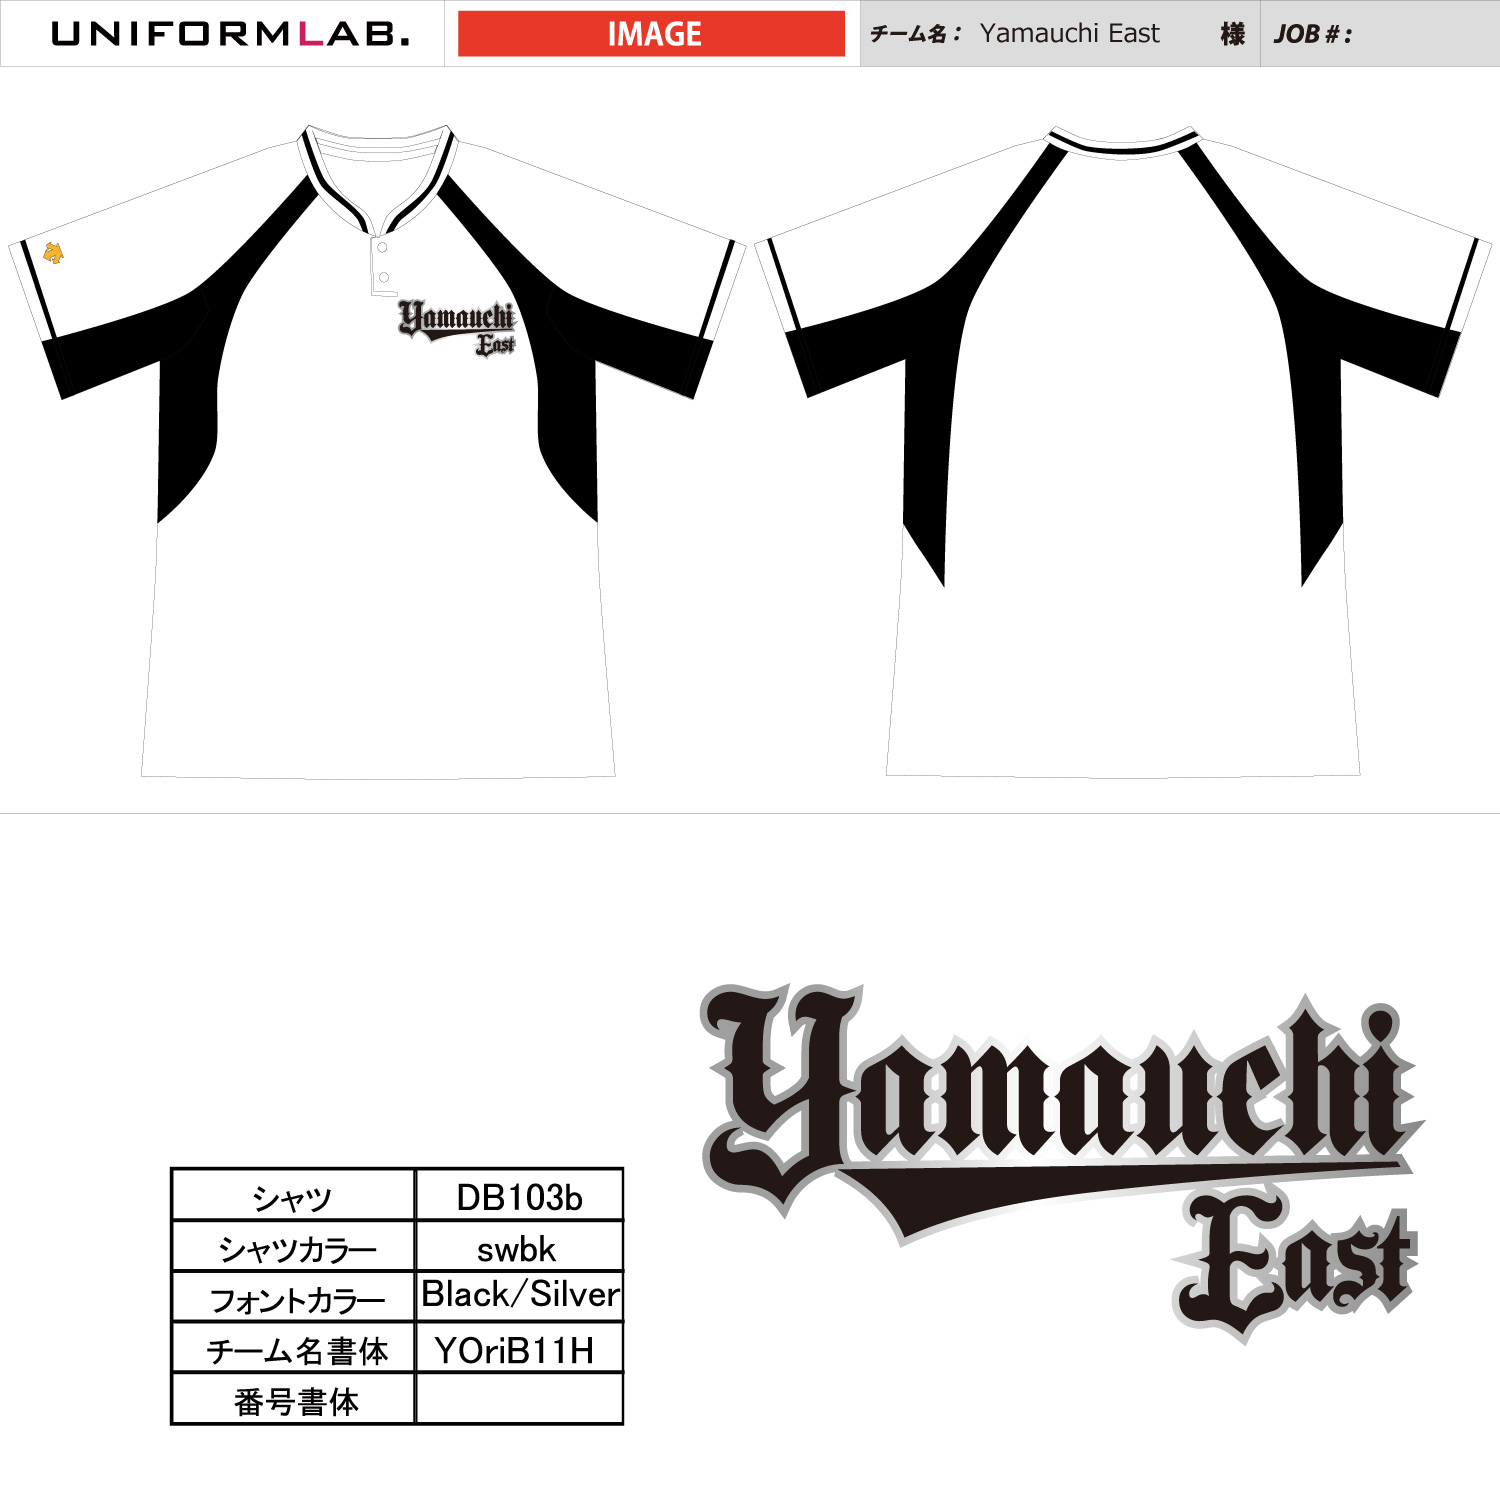 yamauchi